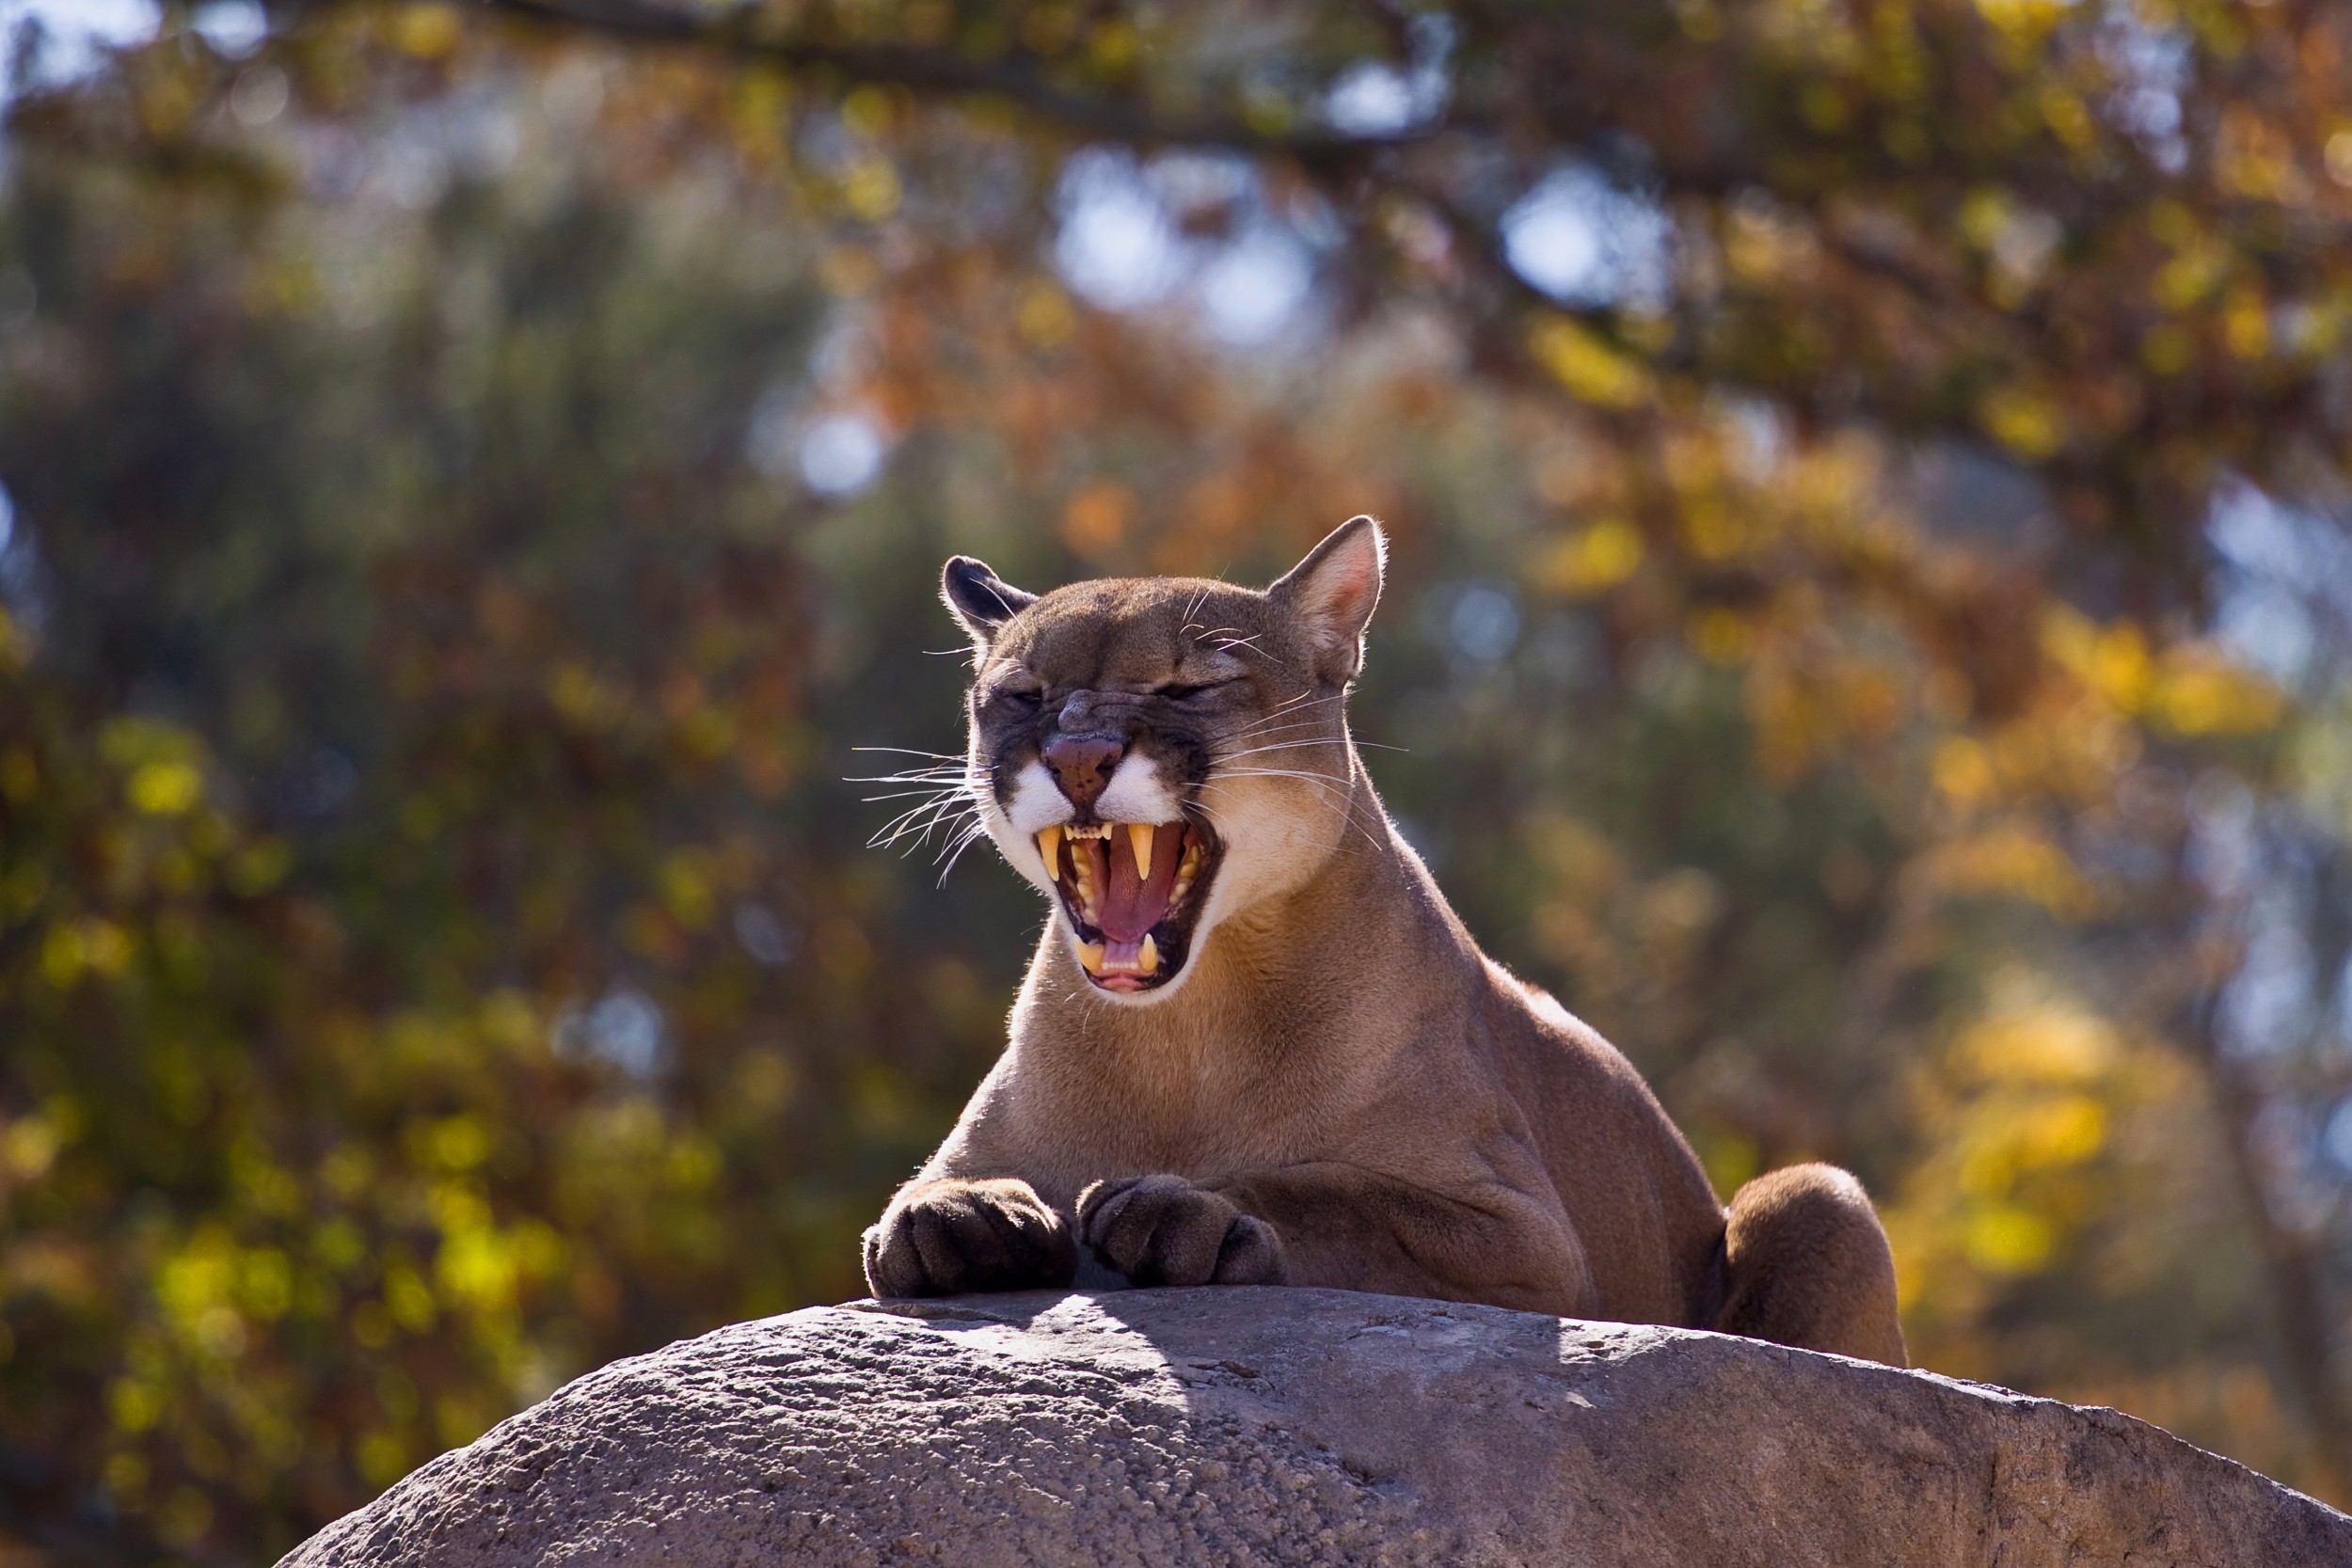 Puma - suçuarana ou onça-parda - ecologia, características, fotos